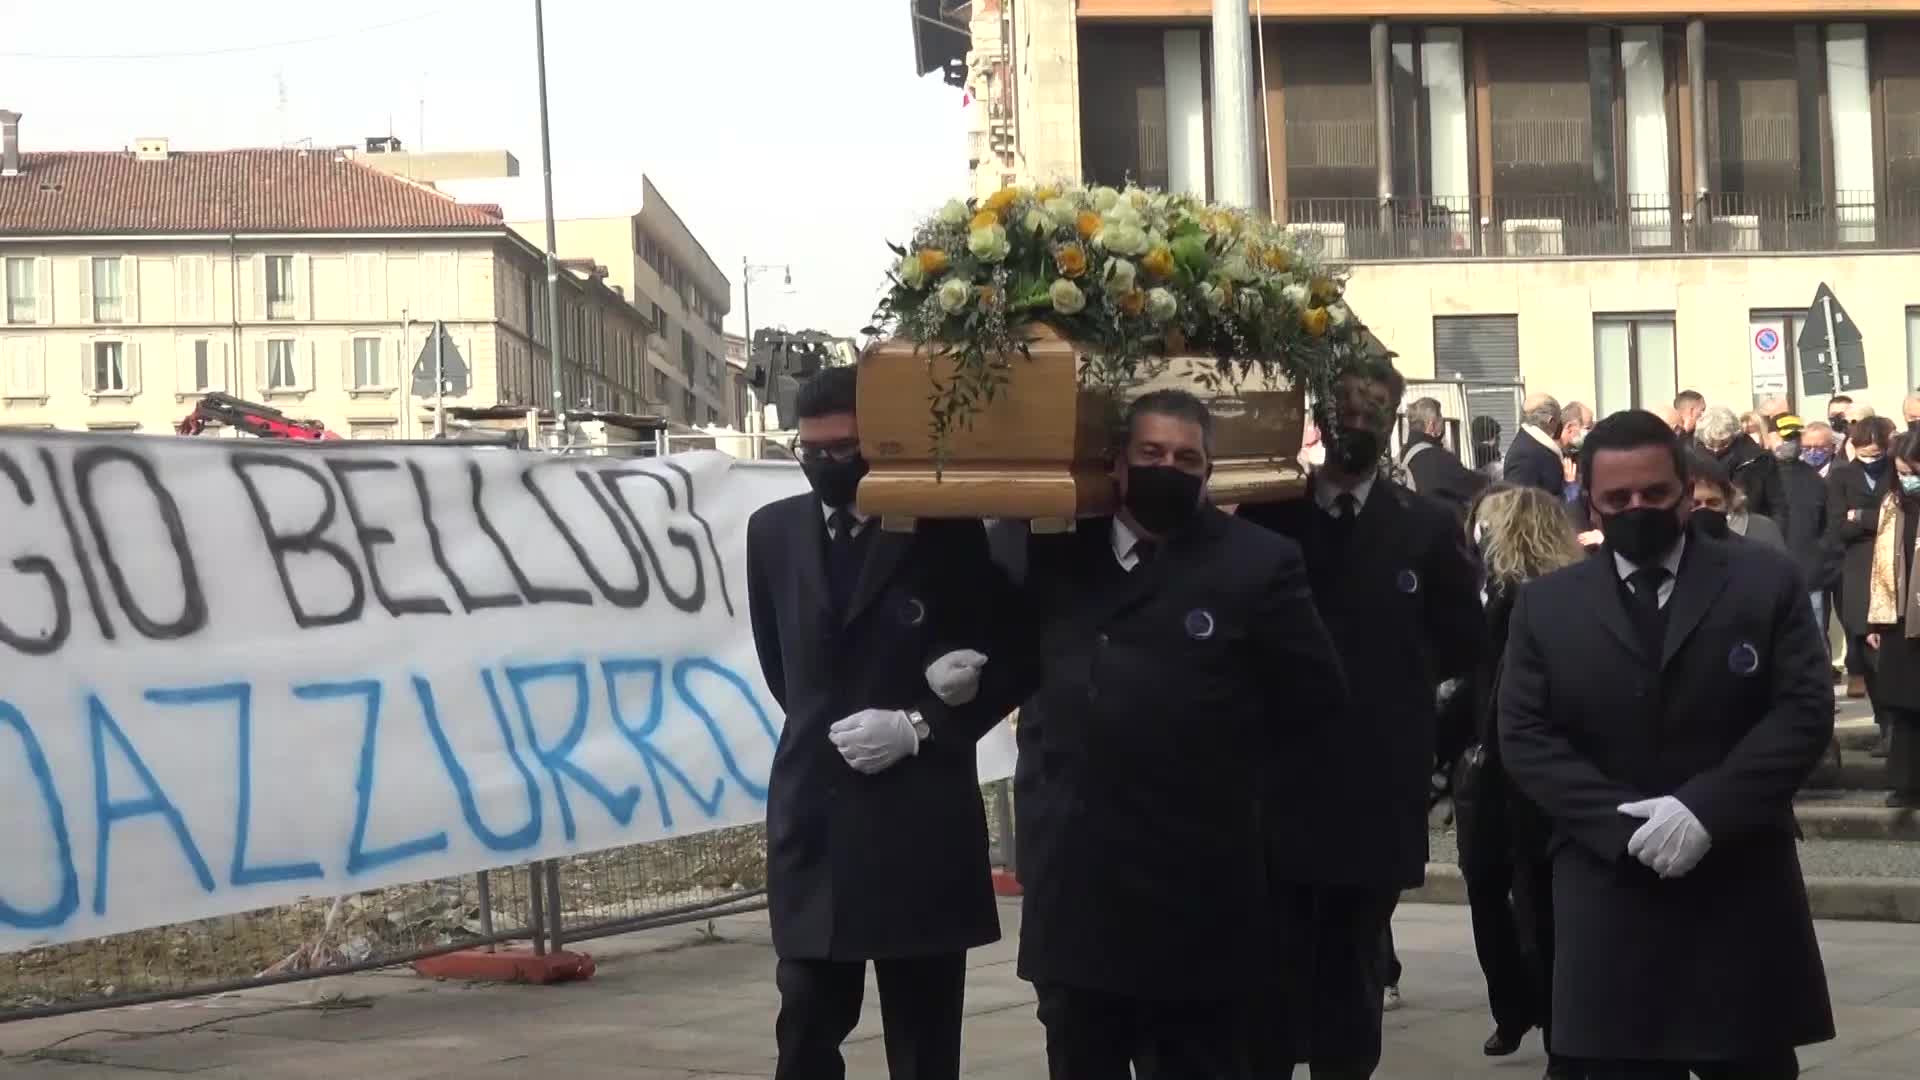 Bellugi, funerali a Milano: "Era un uomo unico, lascia vuoto immenso"